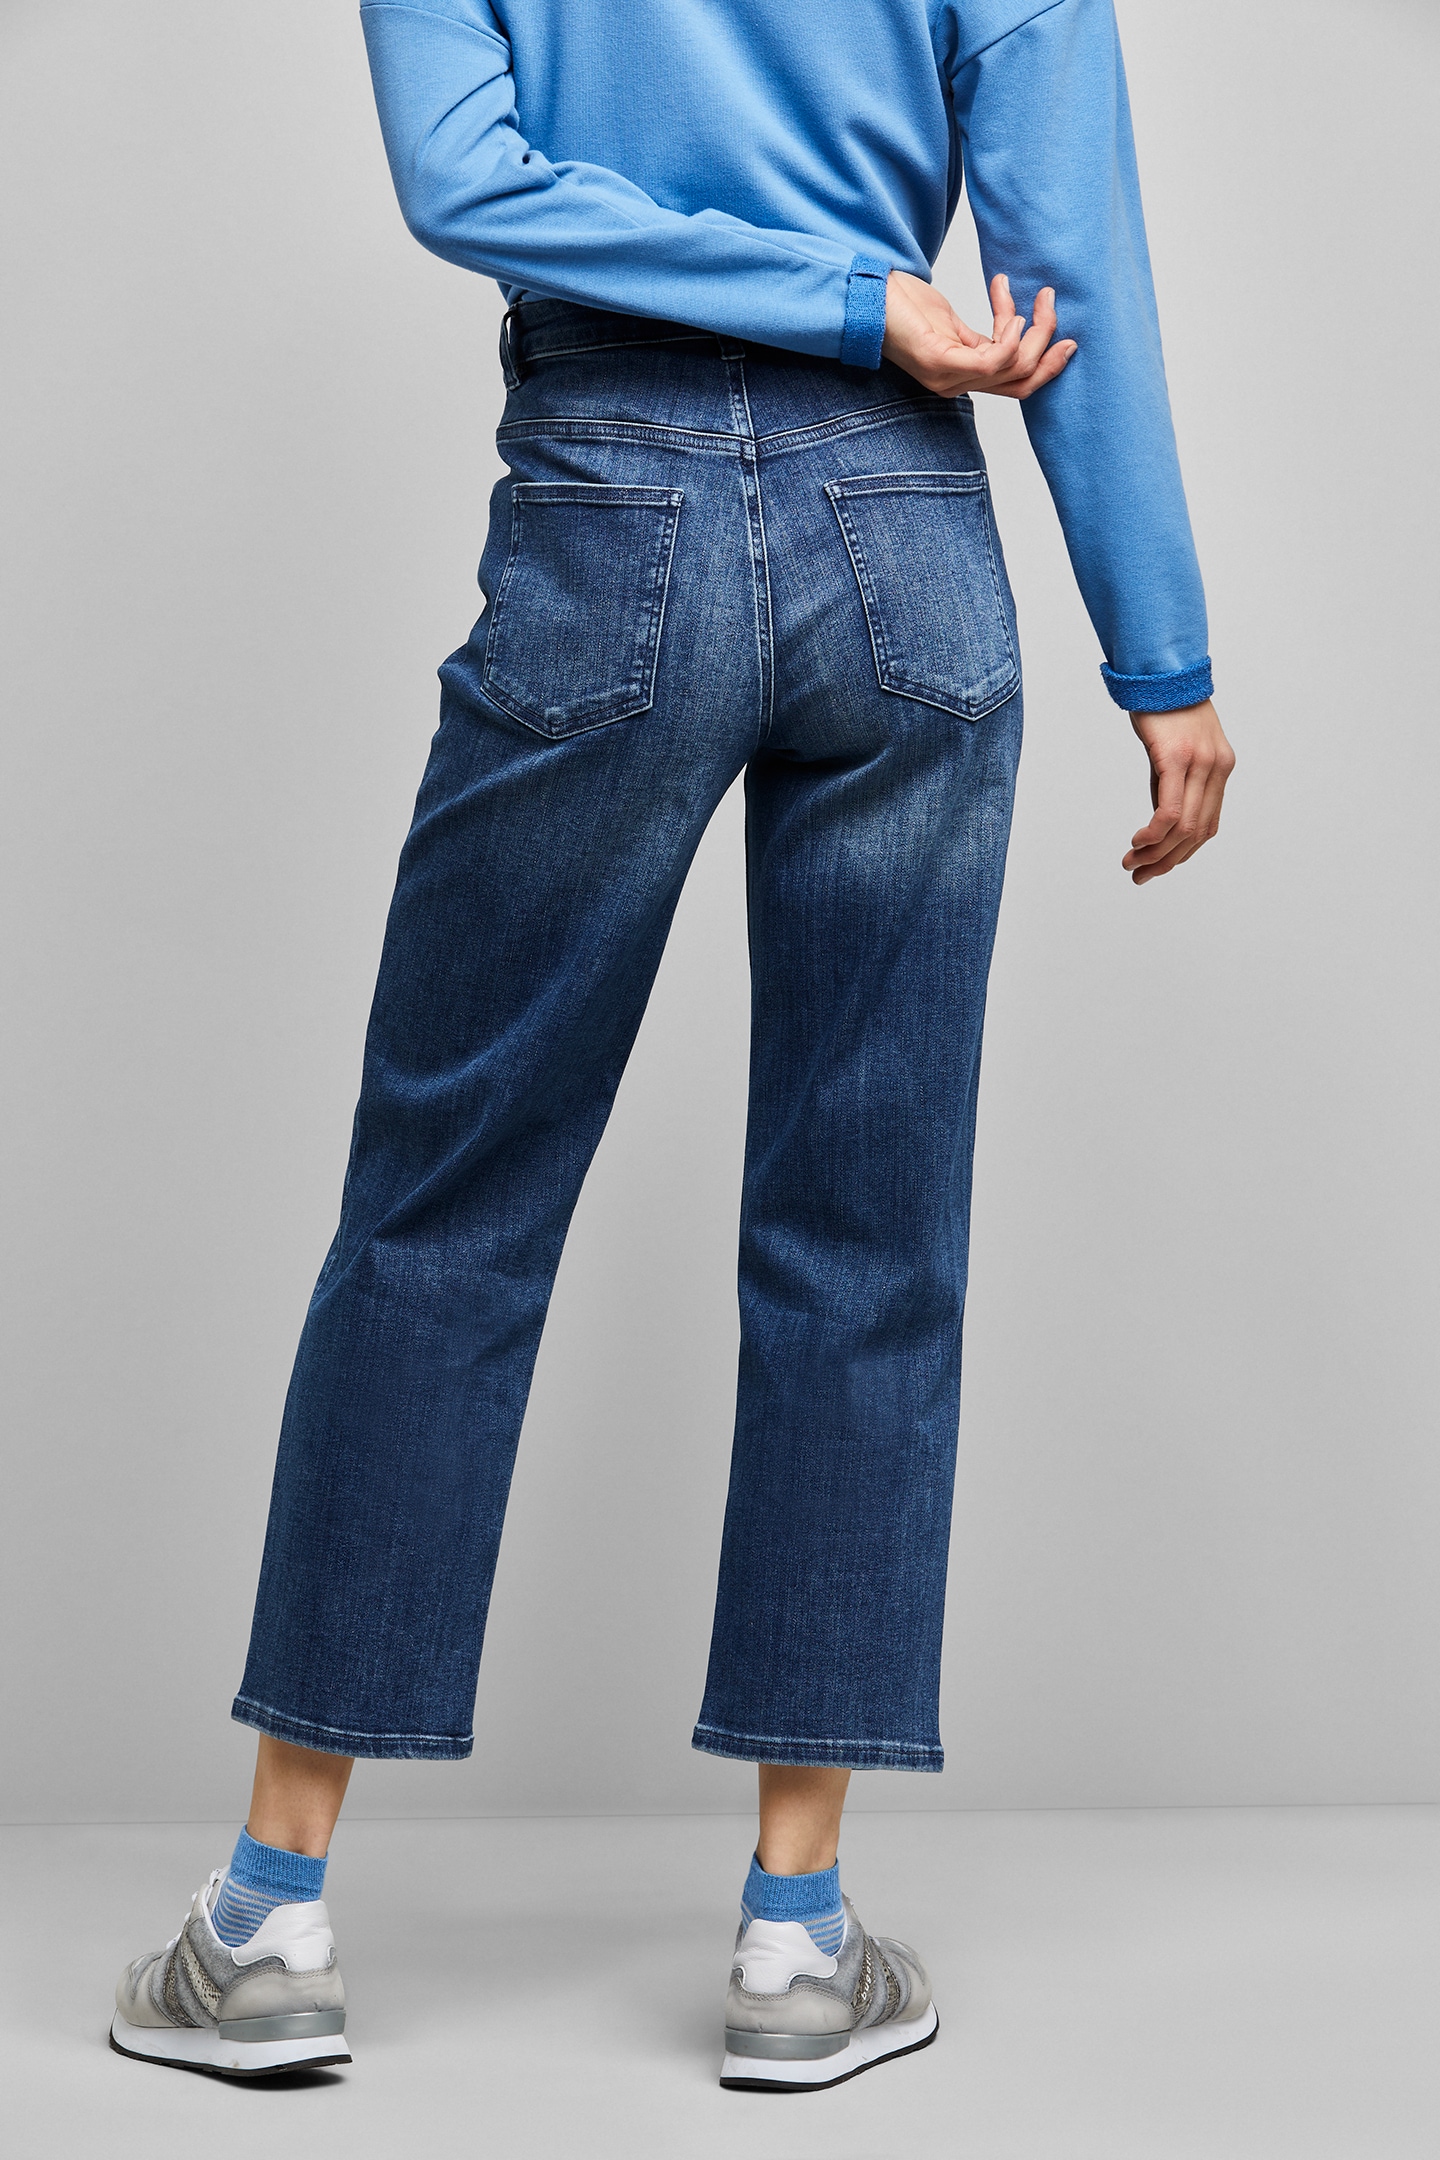 bugatti Schweiz Fit online kaufen Relax 5-Pocket-Jeans, elastischer Baumwollware bei aus Jelmoli-Versand in